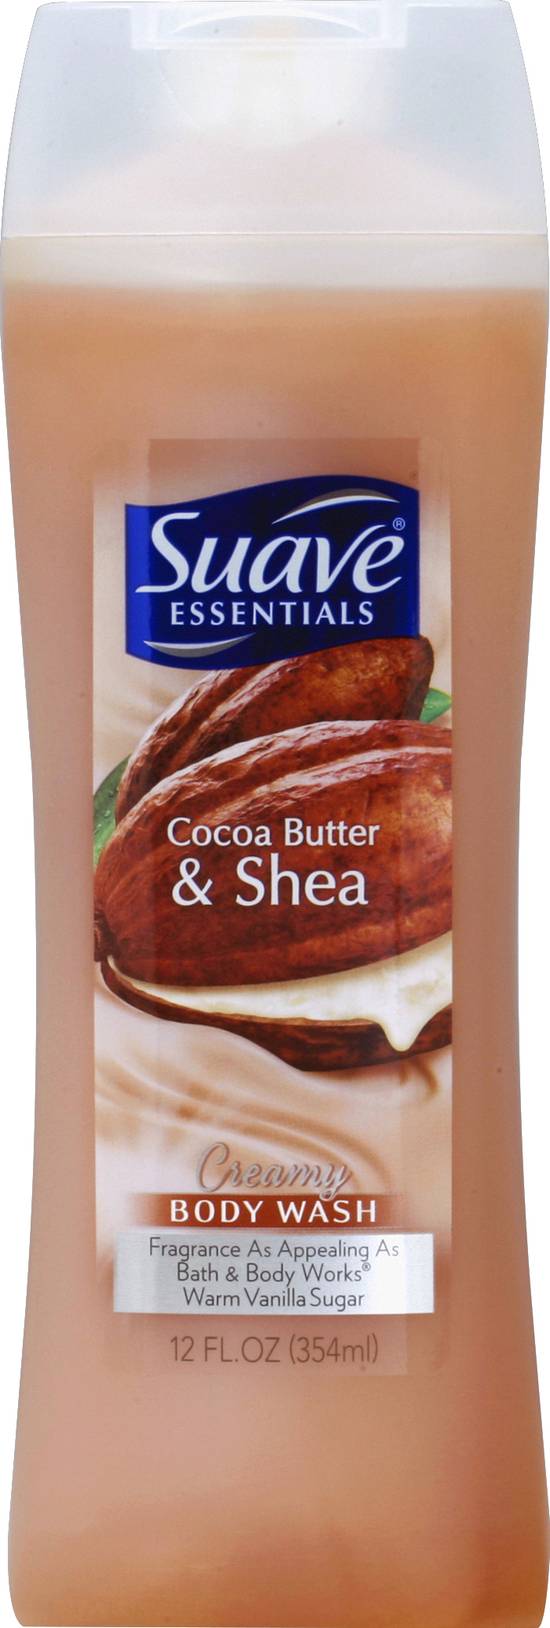 Suave Cocoa Butter & Shea Fragrance Creamy Body Wash